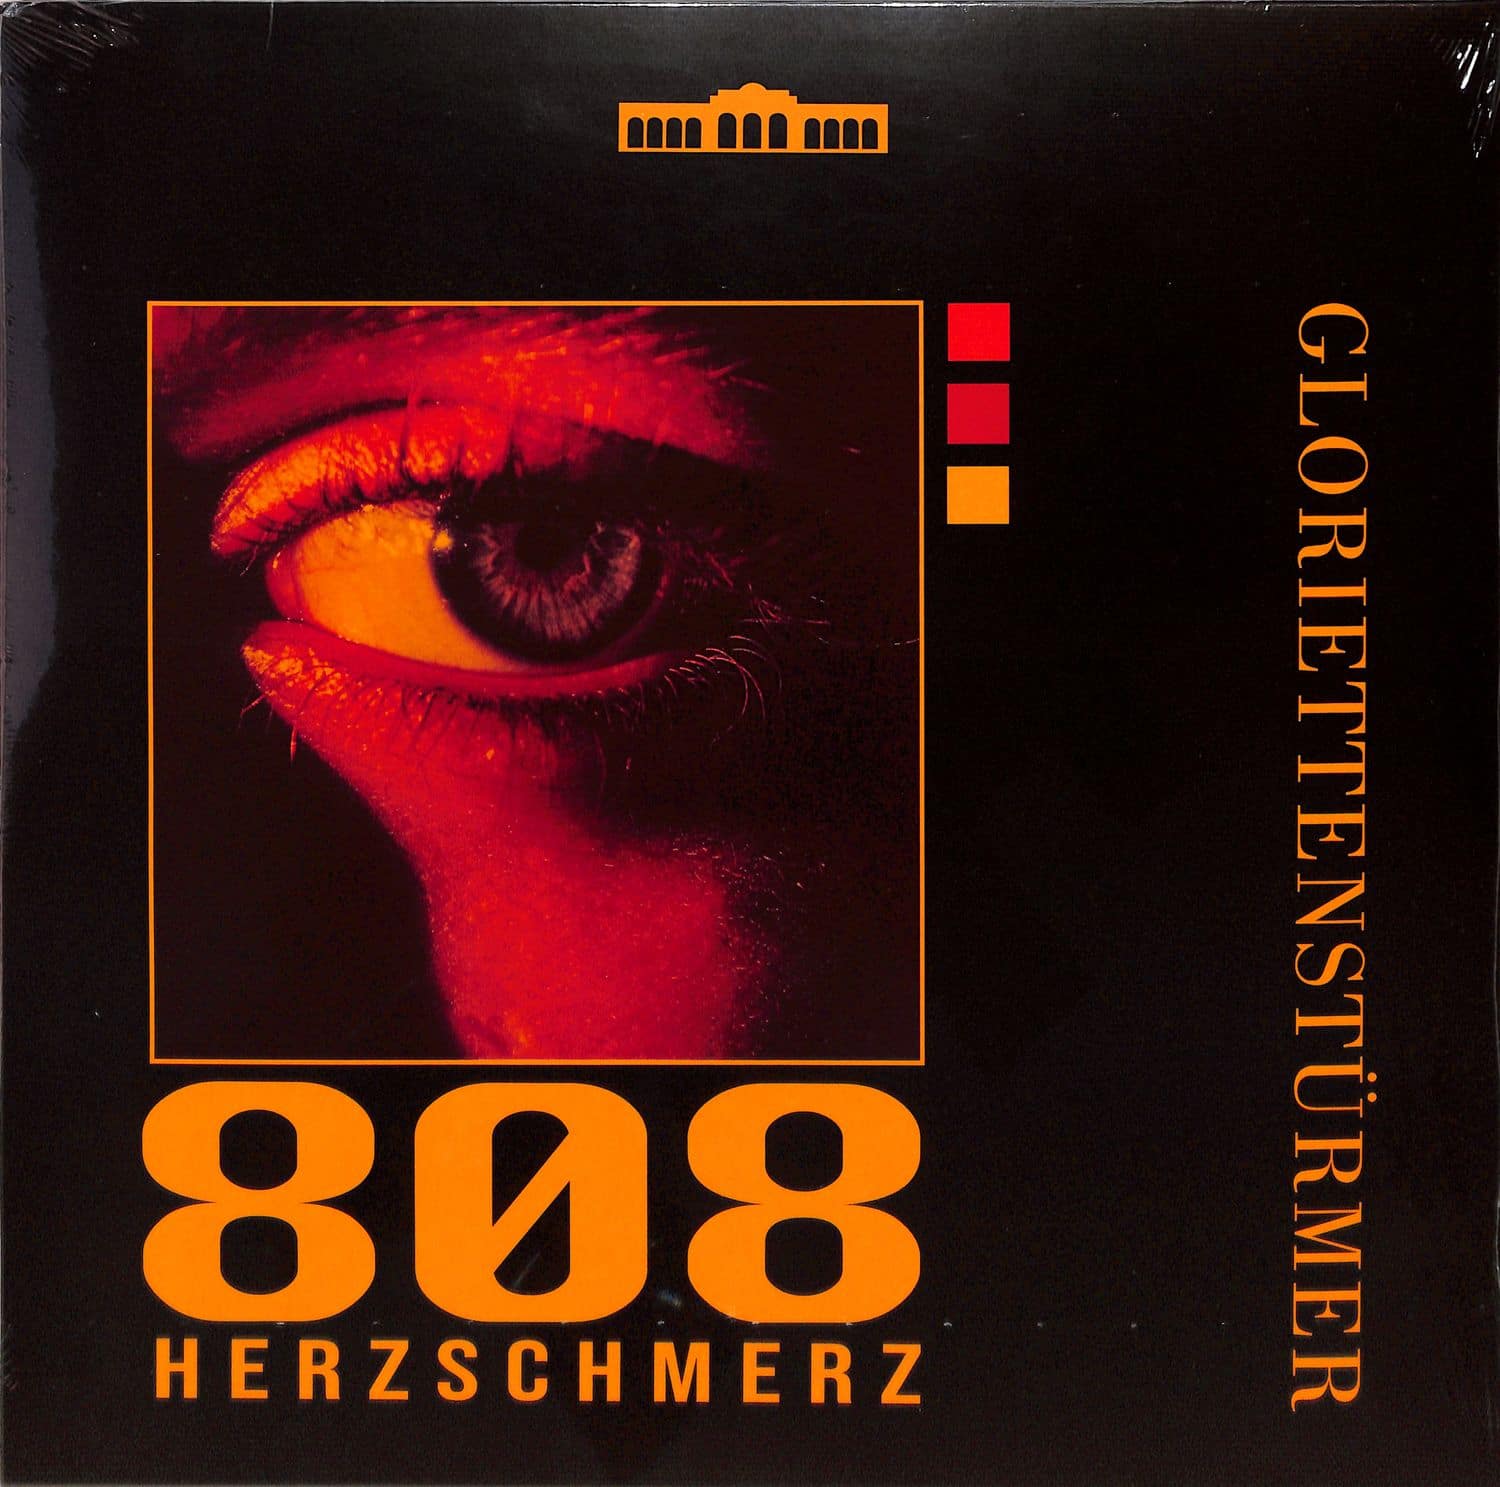 Gloriettenstuermer - 808 HERZSCHMERZ 